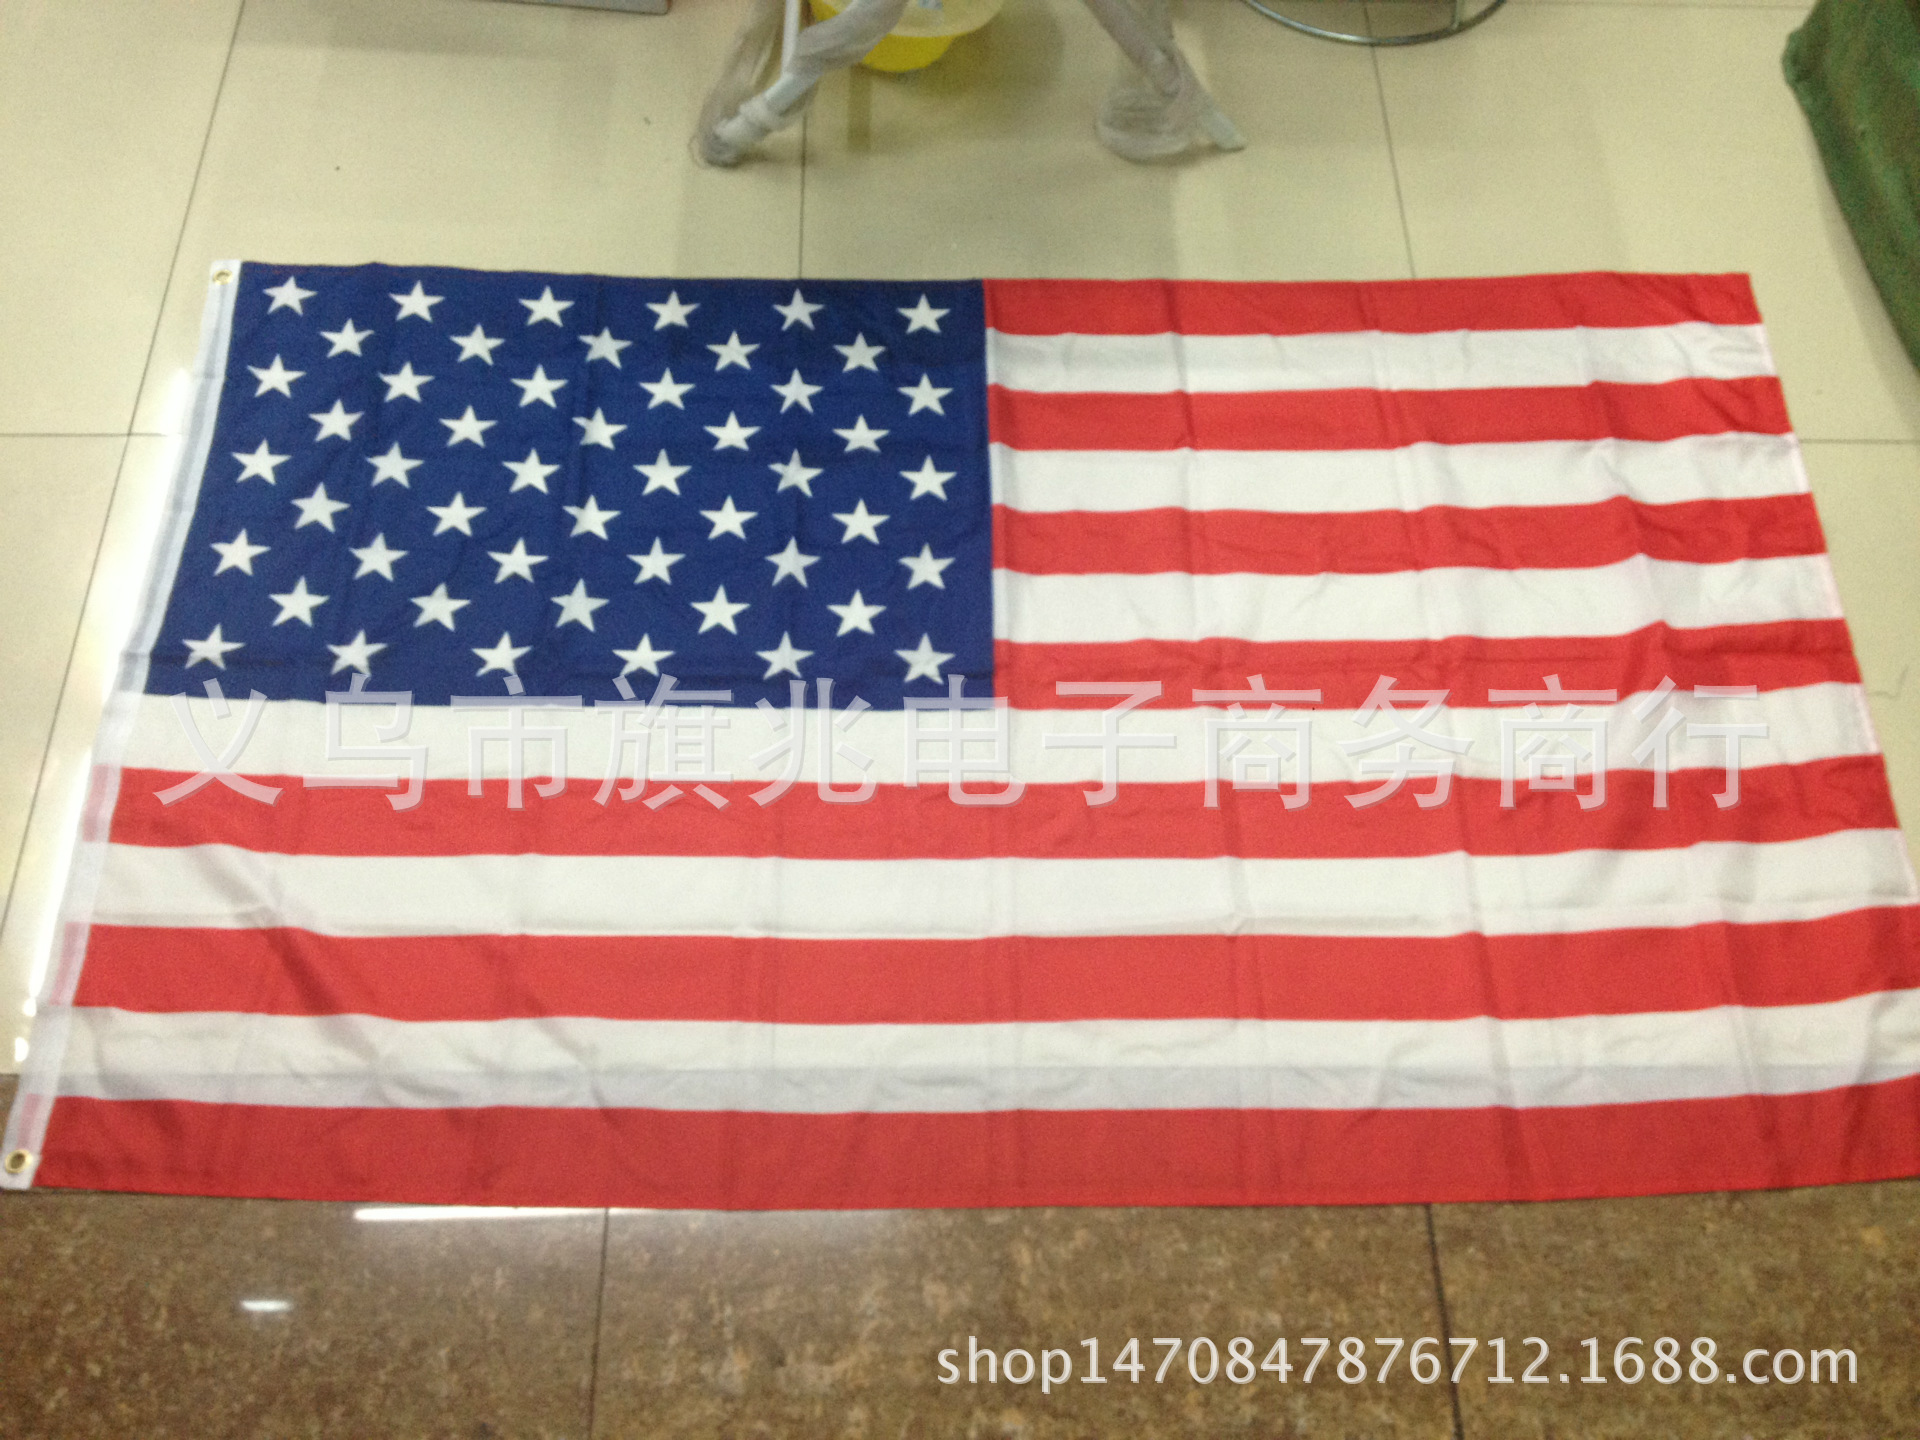 美国国旗 美国星条旗 生产与销售 厂家直销